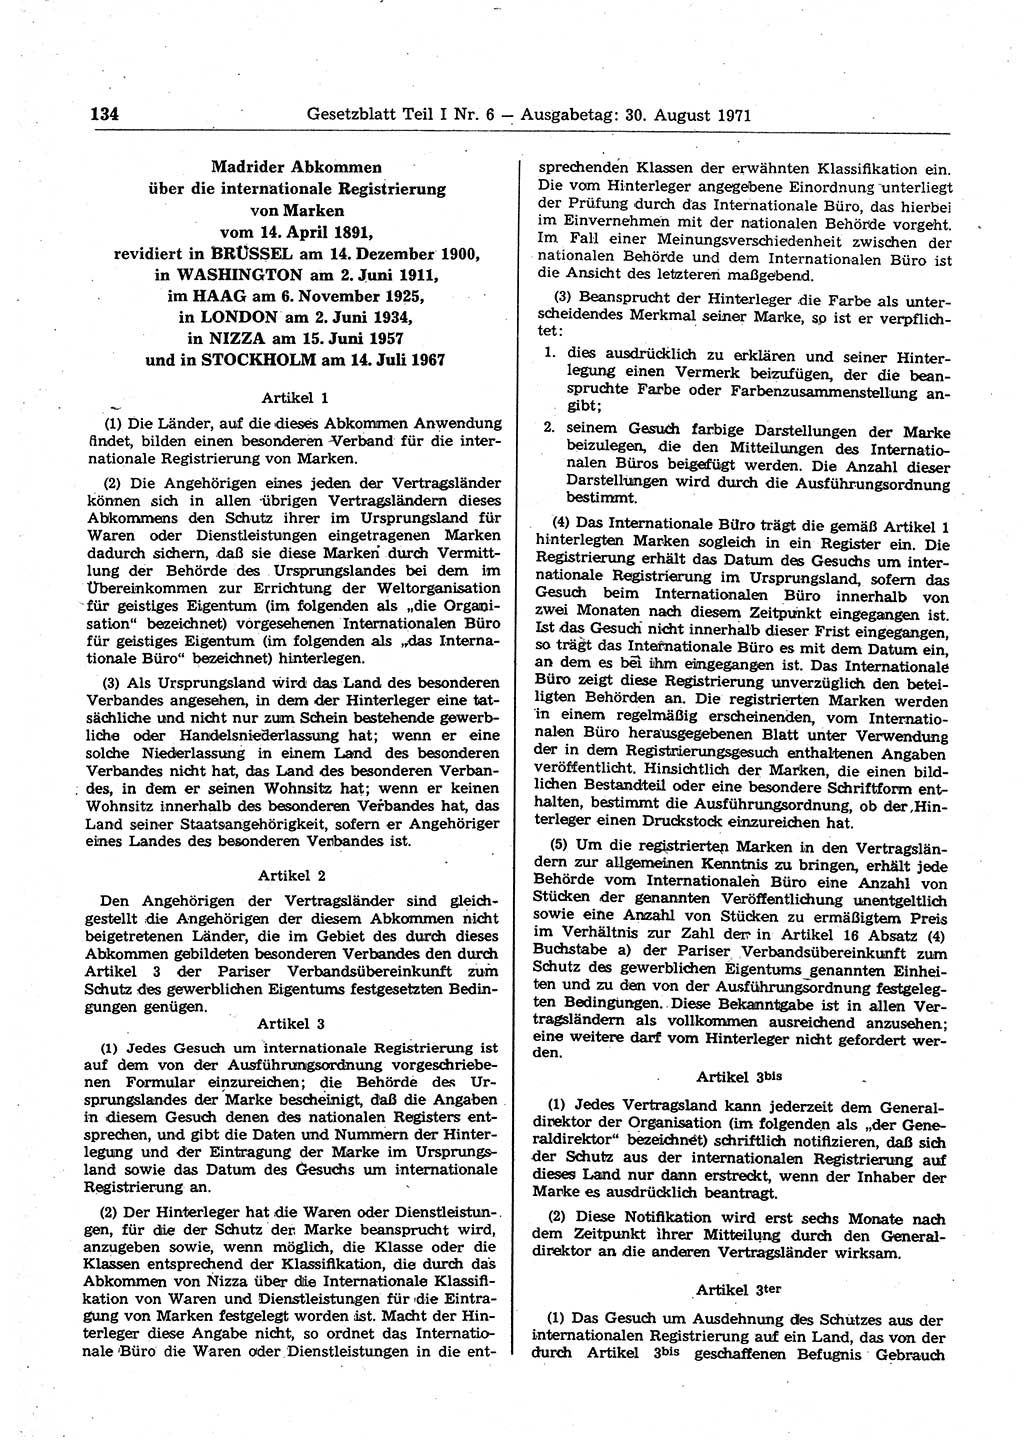 Gesetzblatt (GBl.) der Deutschen Demokratischen Republik (DDR) Teil Ⅰ 1971, Seite 134 (GBl. DDR Ⅰ 1971, S. 134)